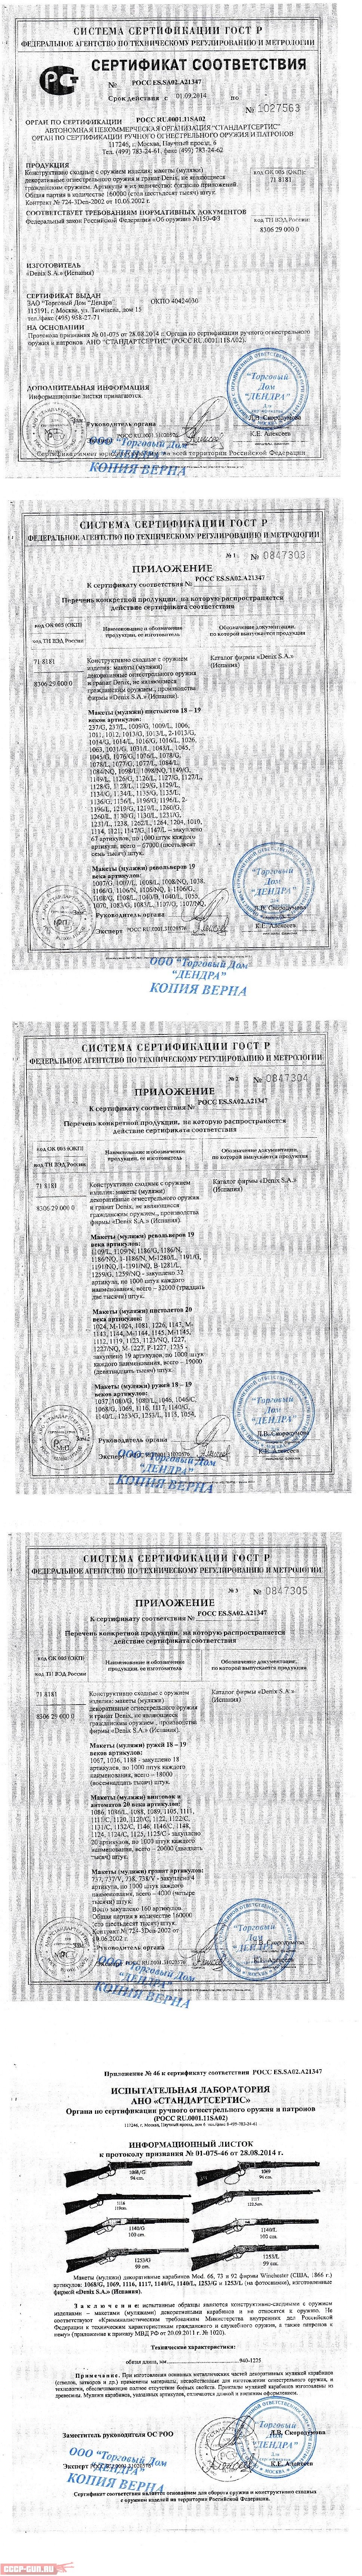 Сертификат на Подставка универсальная для макетов огнестрельного оружия Denix D7 / 800 скачать